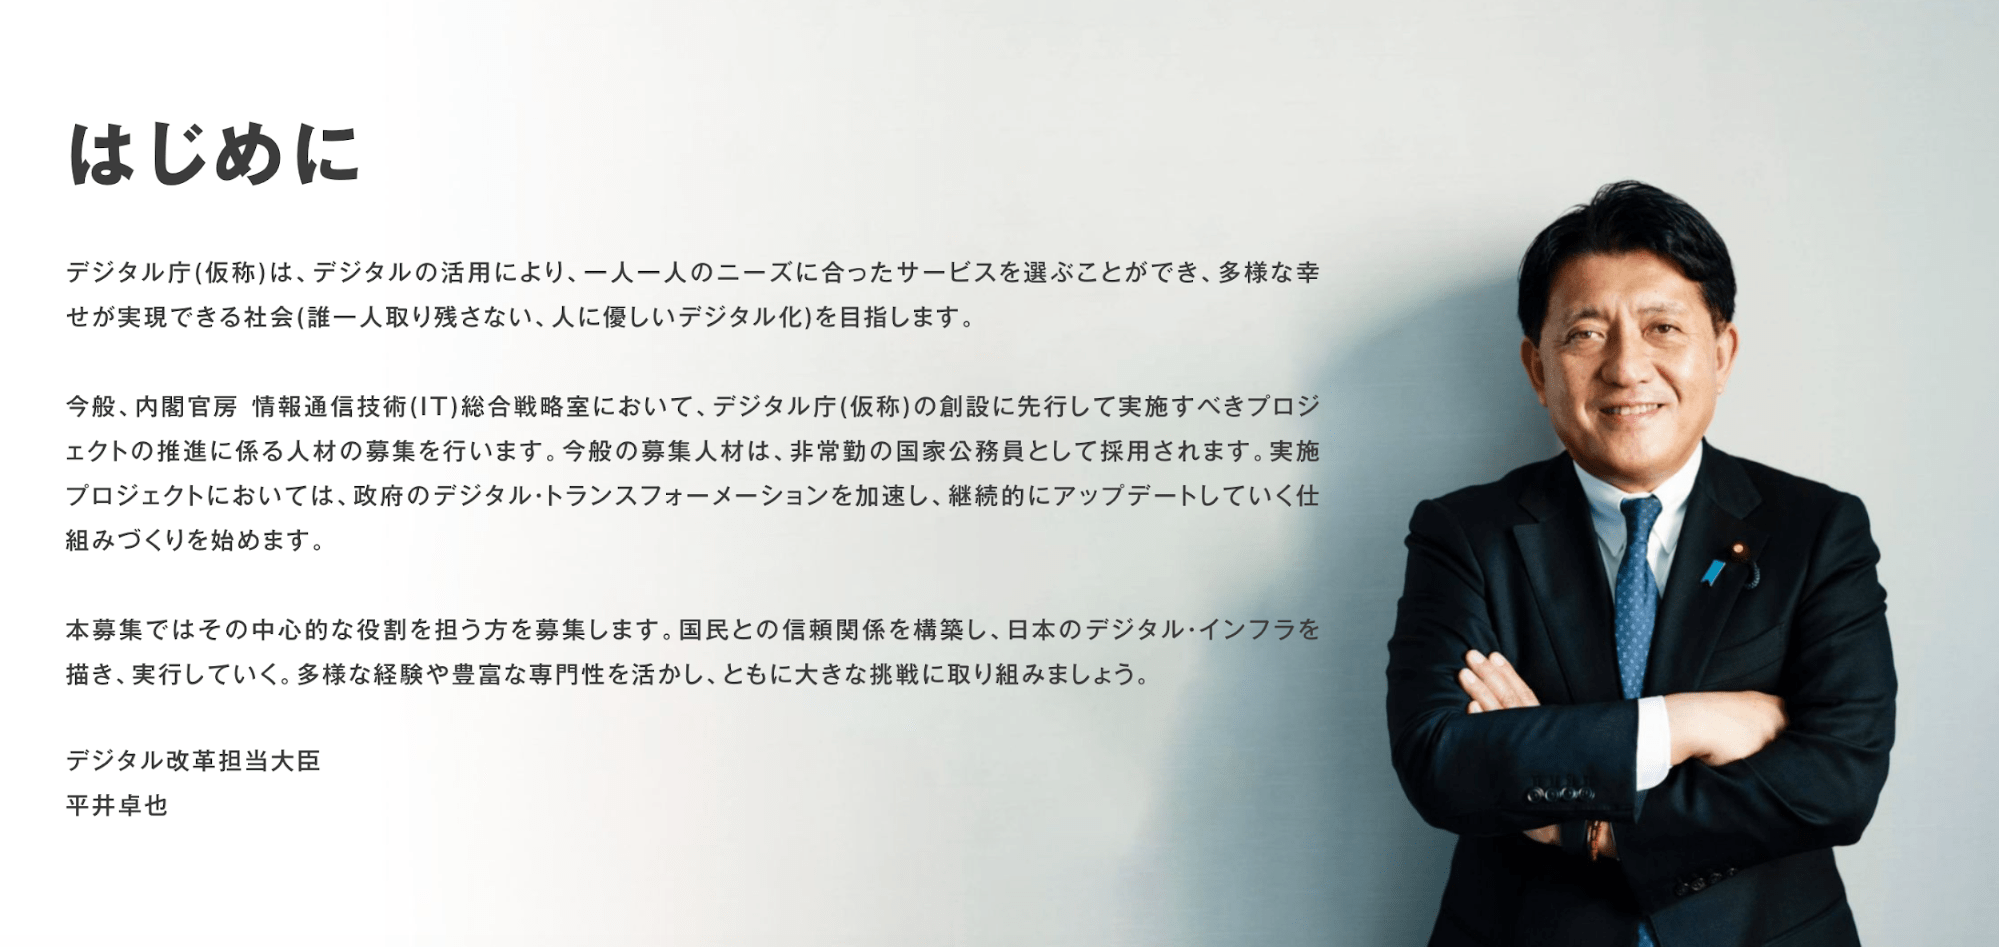 採用サイトには平井大臣のメッセージが掲載されている